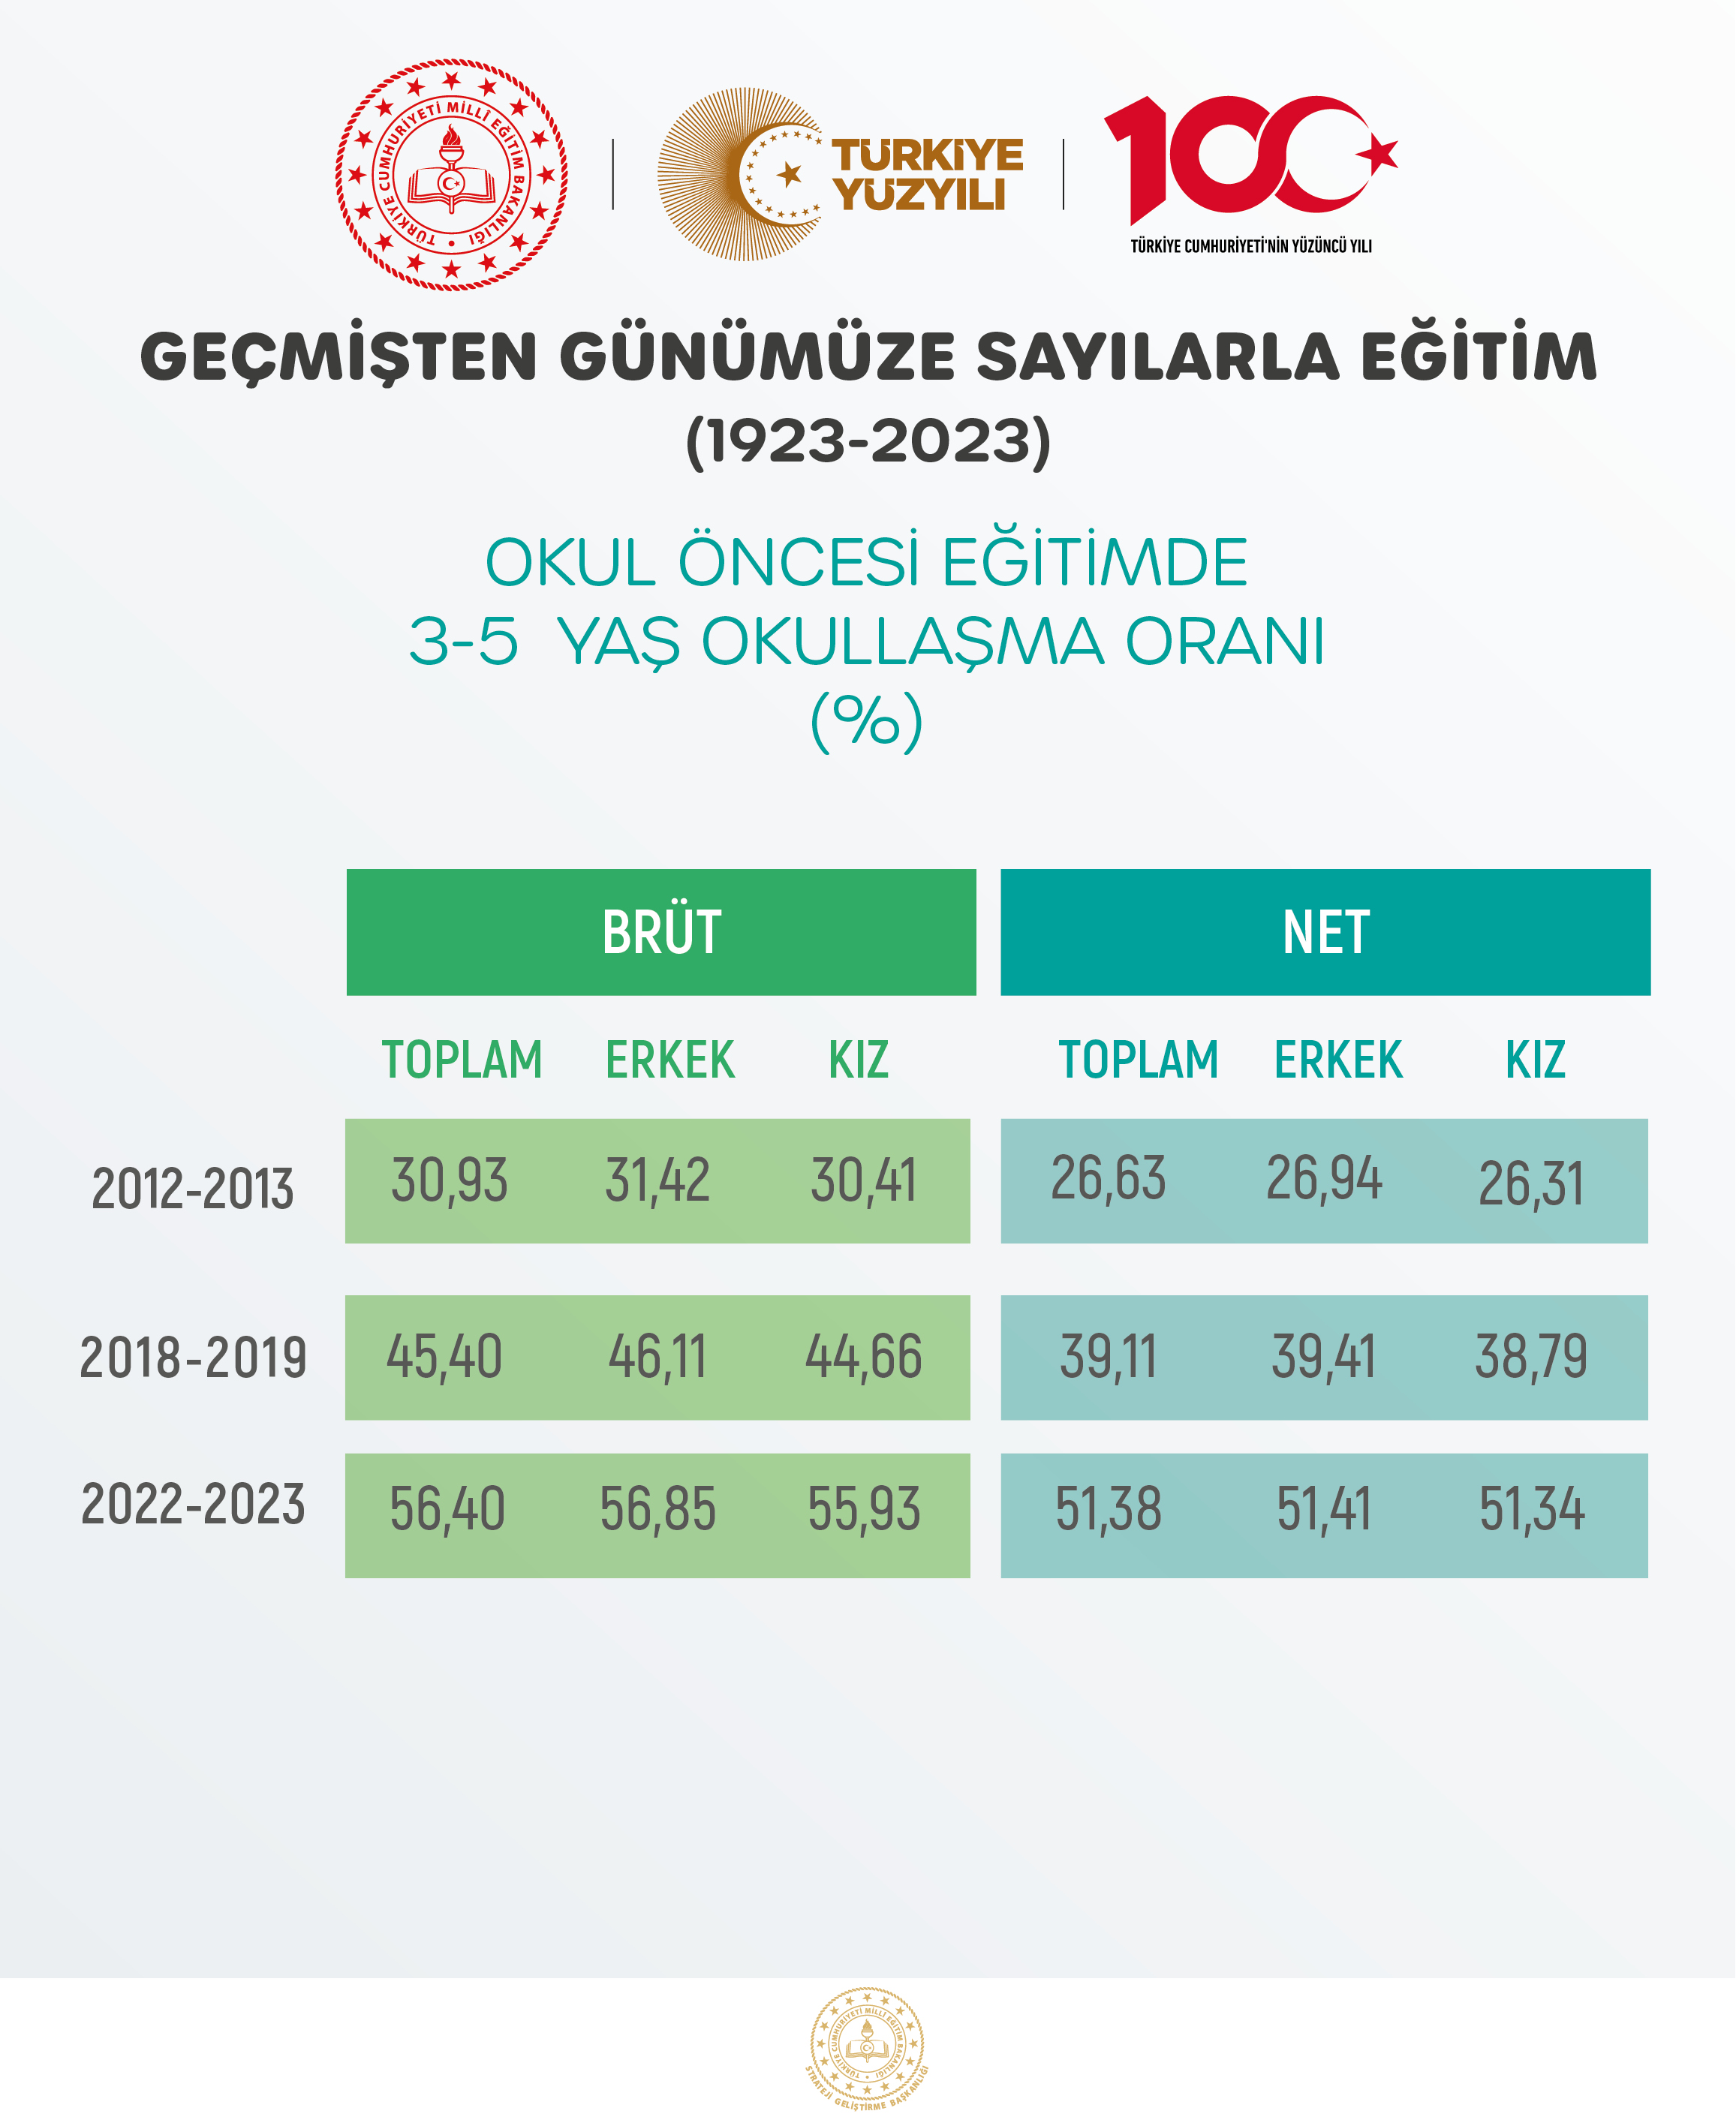 OKUL ÖNCESİ EĞİTİMDE 3-5 YAŞ OKULLAŞMA ORANI (%)